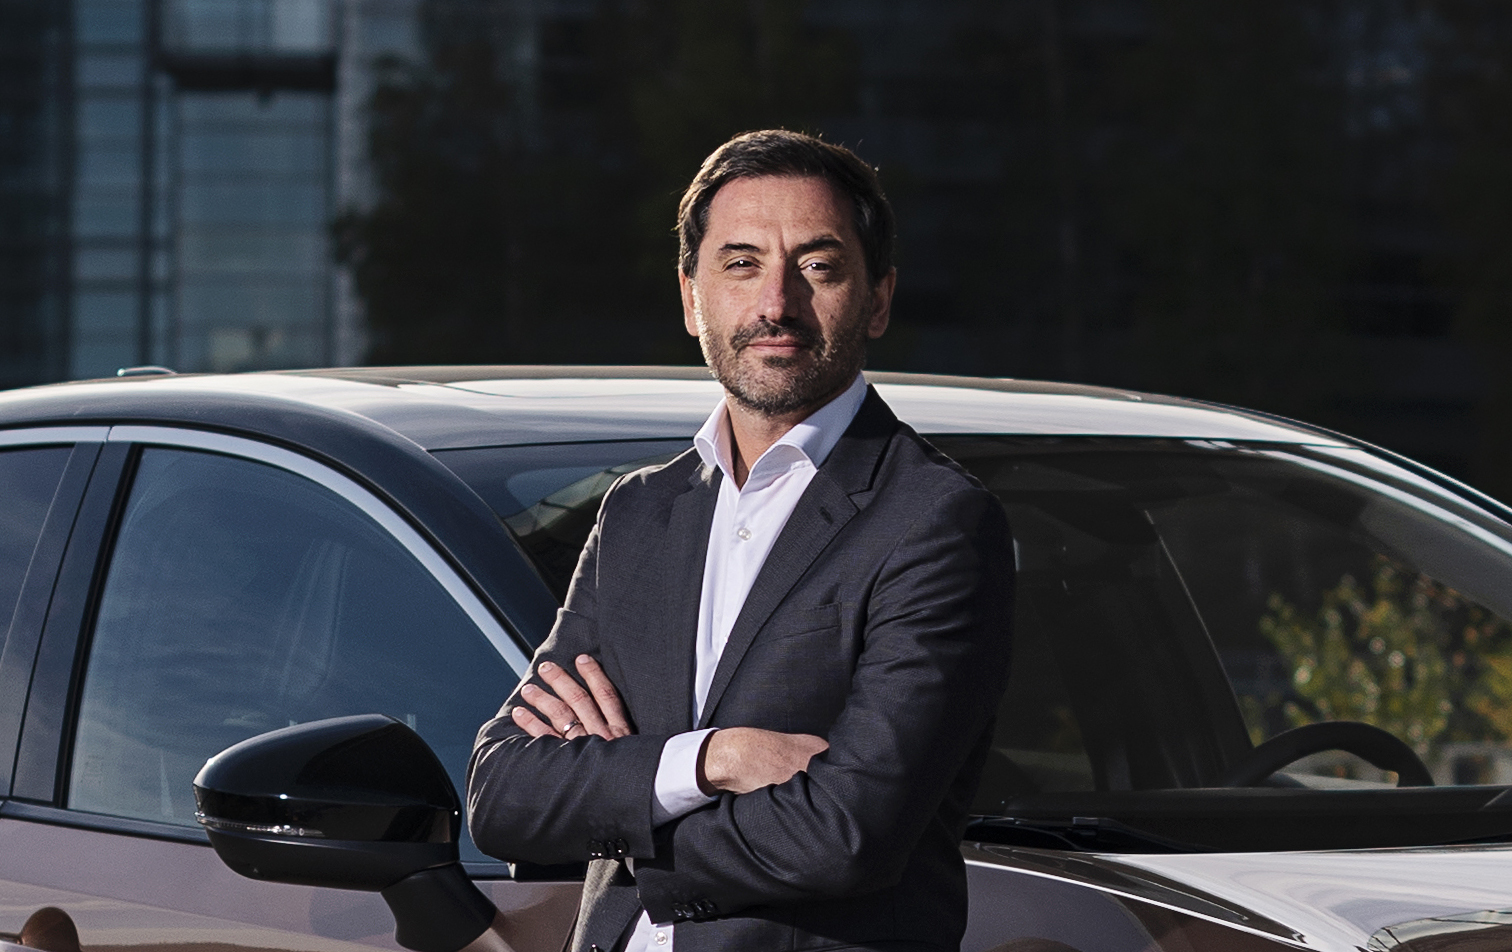 Costaganna ser, desde el 1 de abril, el nuevo Consejero Director General de Nissan Iberia